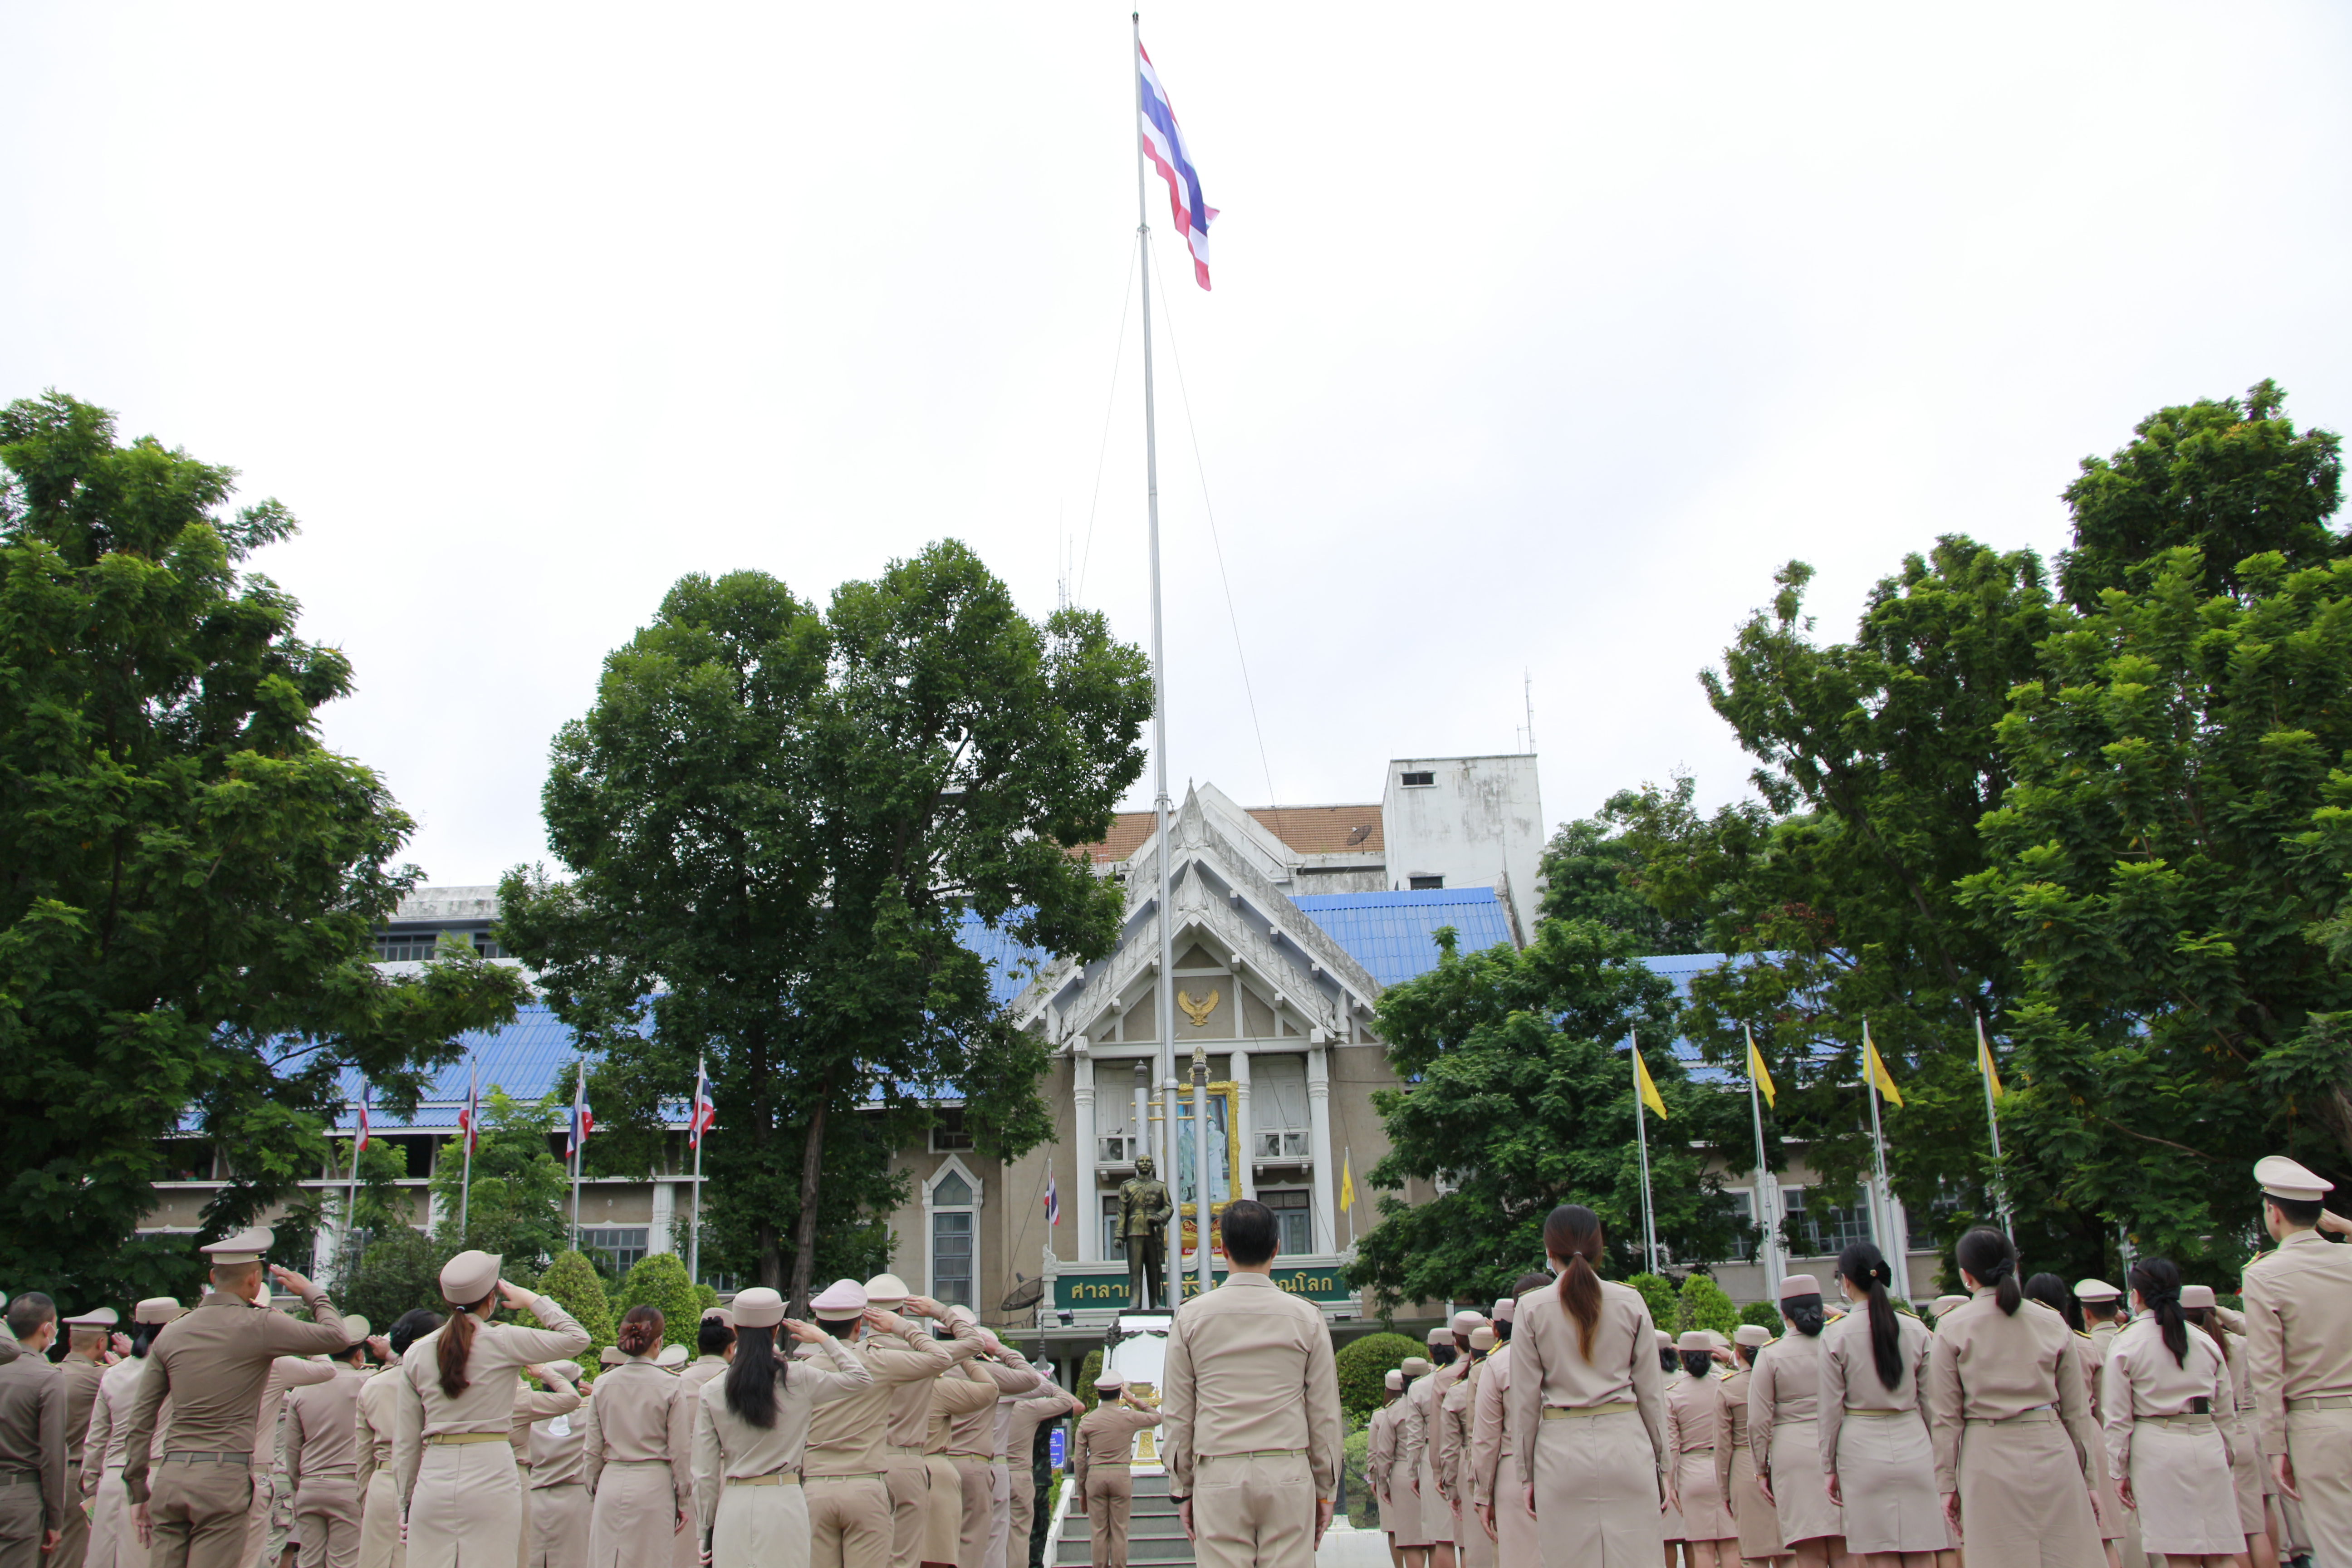 จังหวัดพิษณุโลก จัดกิจกรรมเคารพธงชาติ และร้องเพลงชาติไทย เนื่องในวันพระราชทานธงชาติไทย ครบรอบ 106 ปี